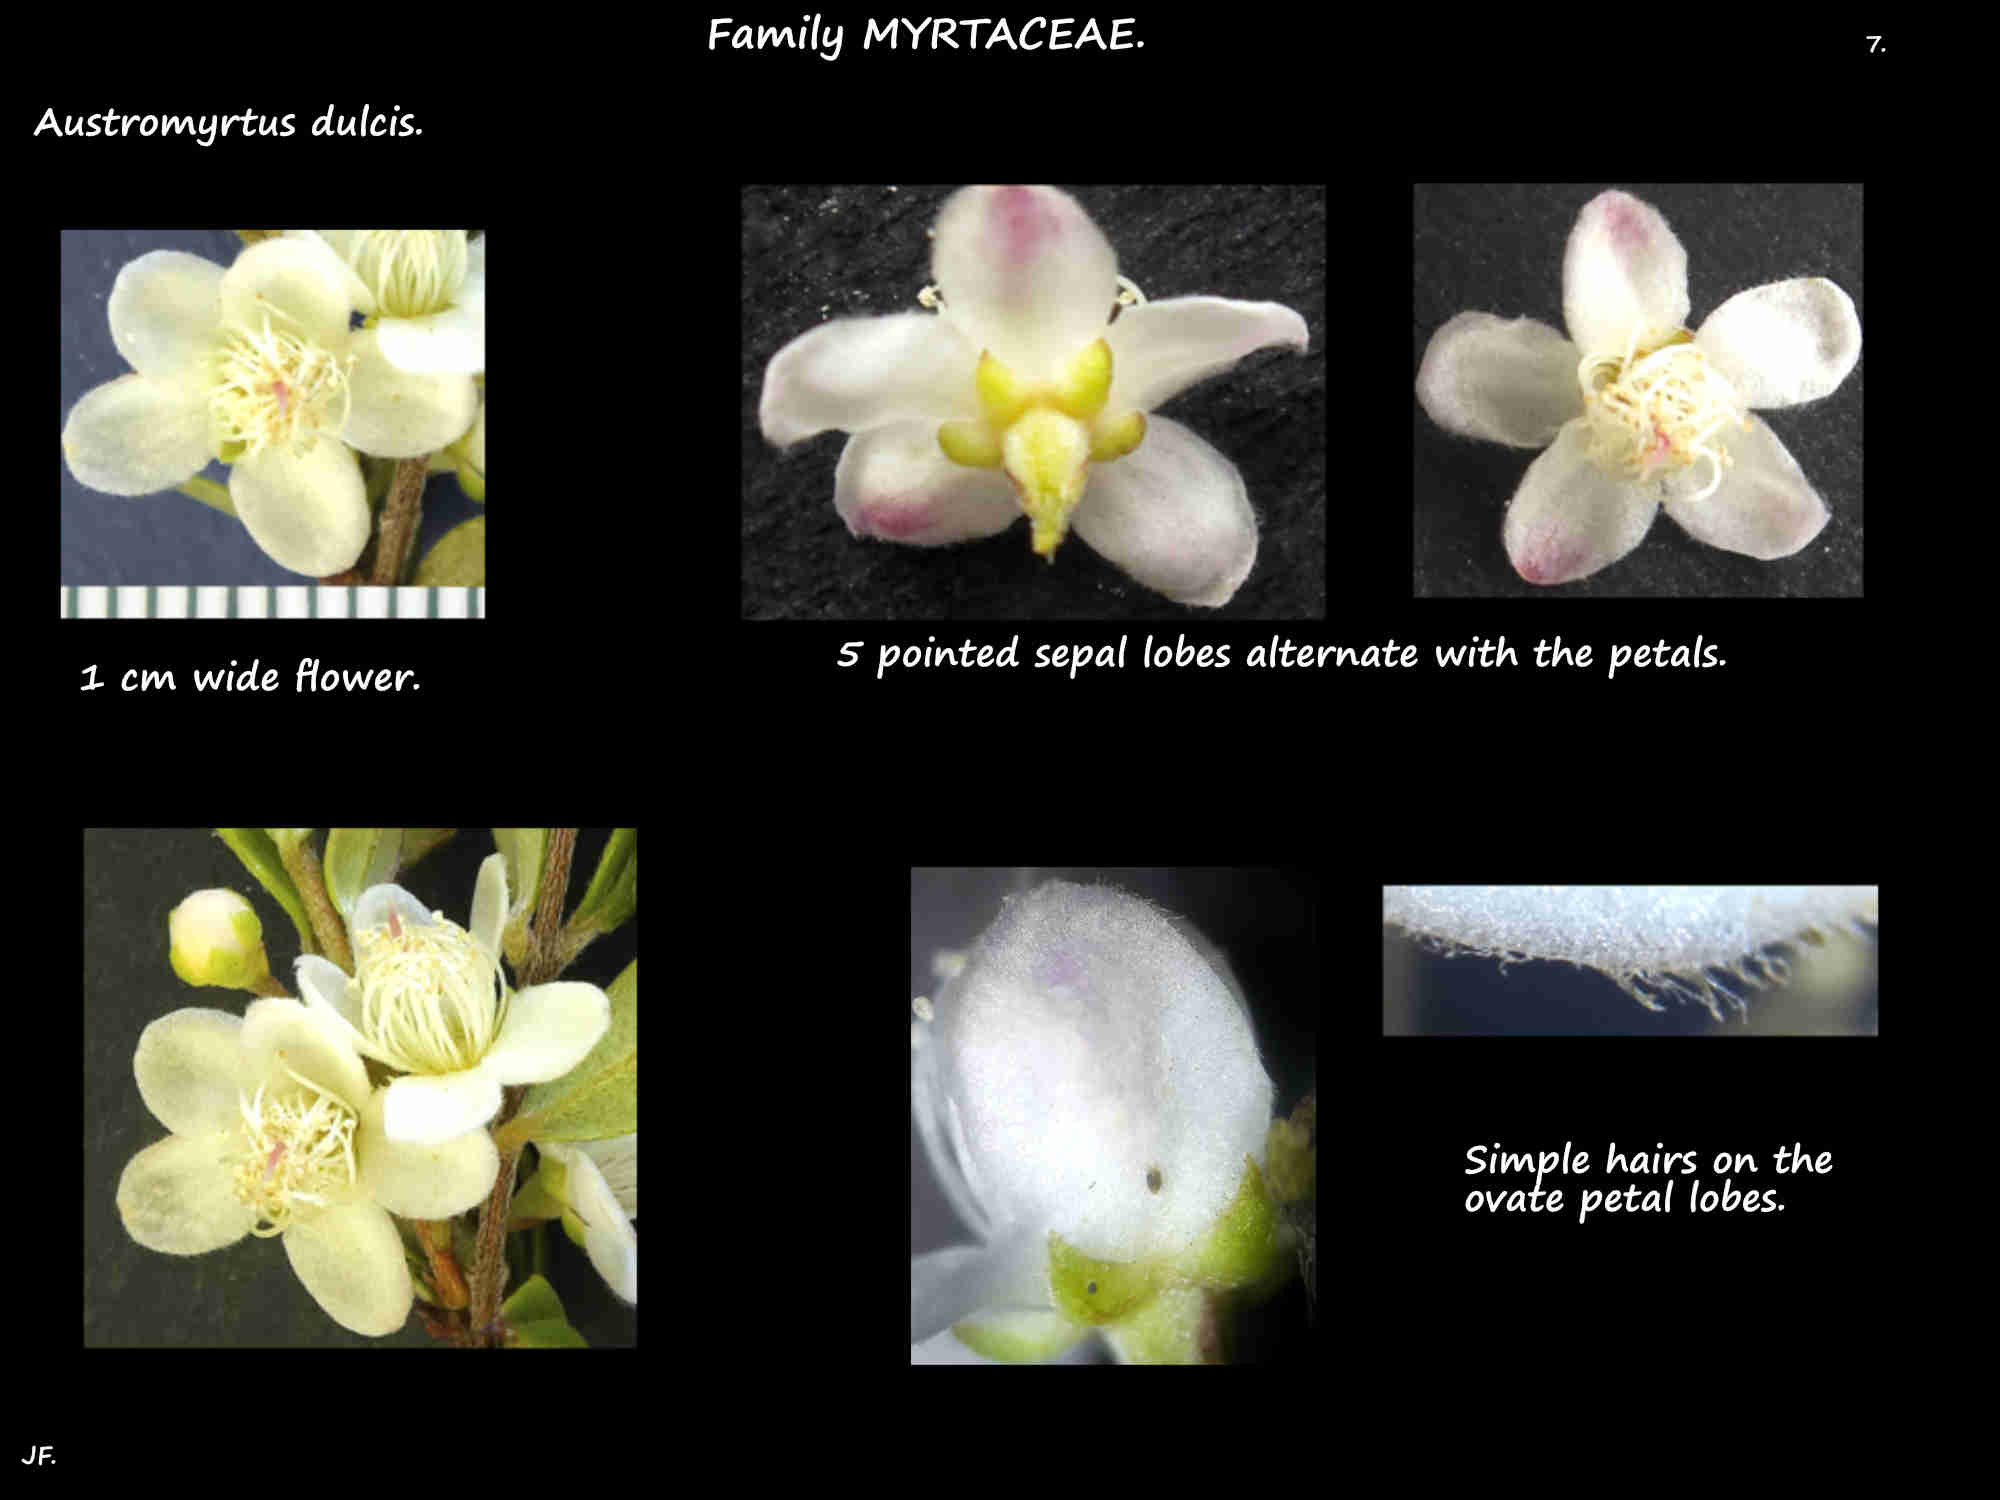 7 Austromyrtus dulcis petals